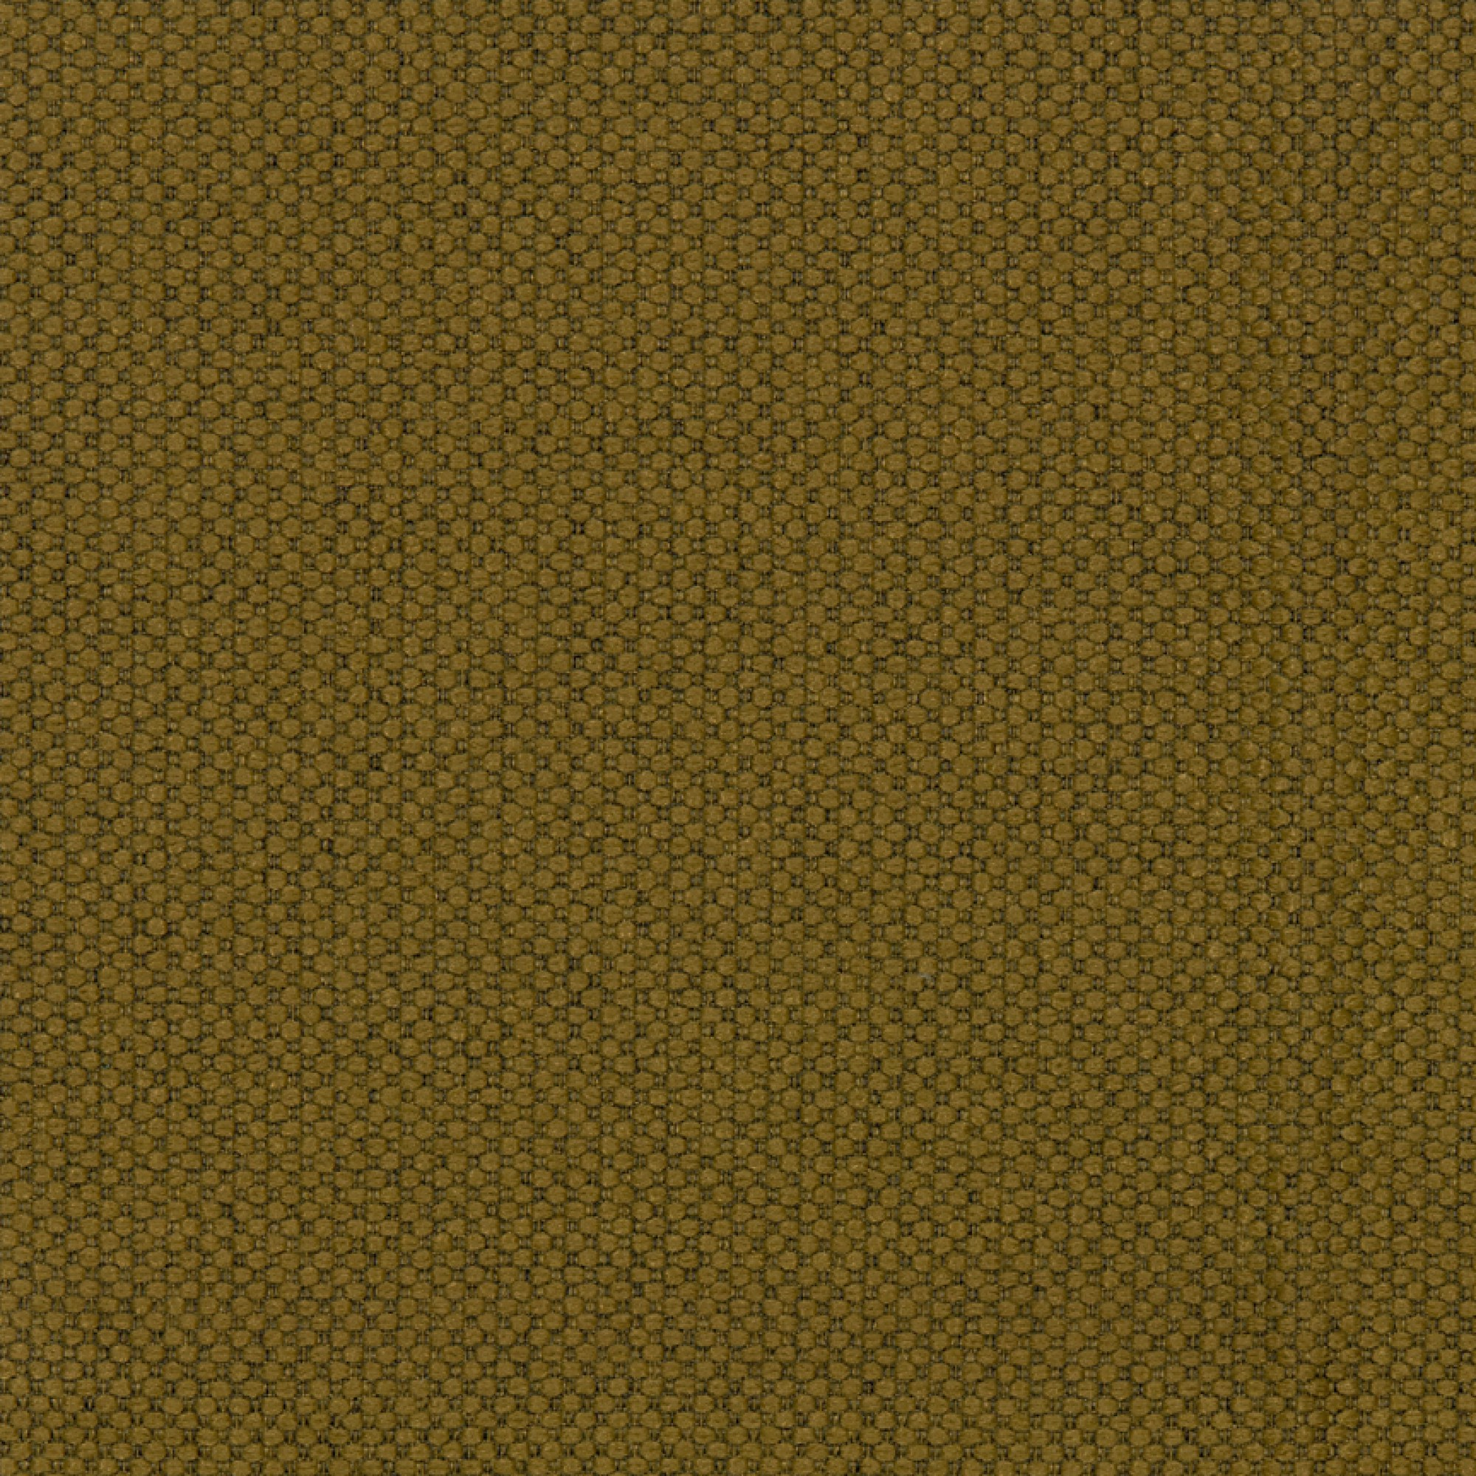 Fabric sample Merit 0027 brown